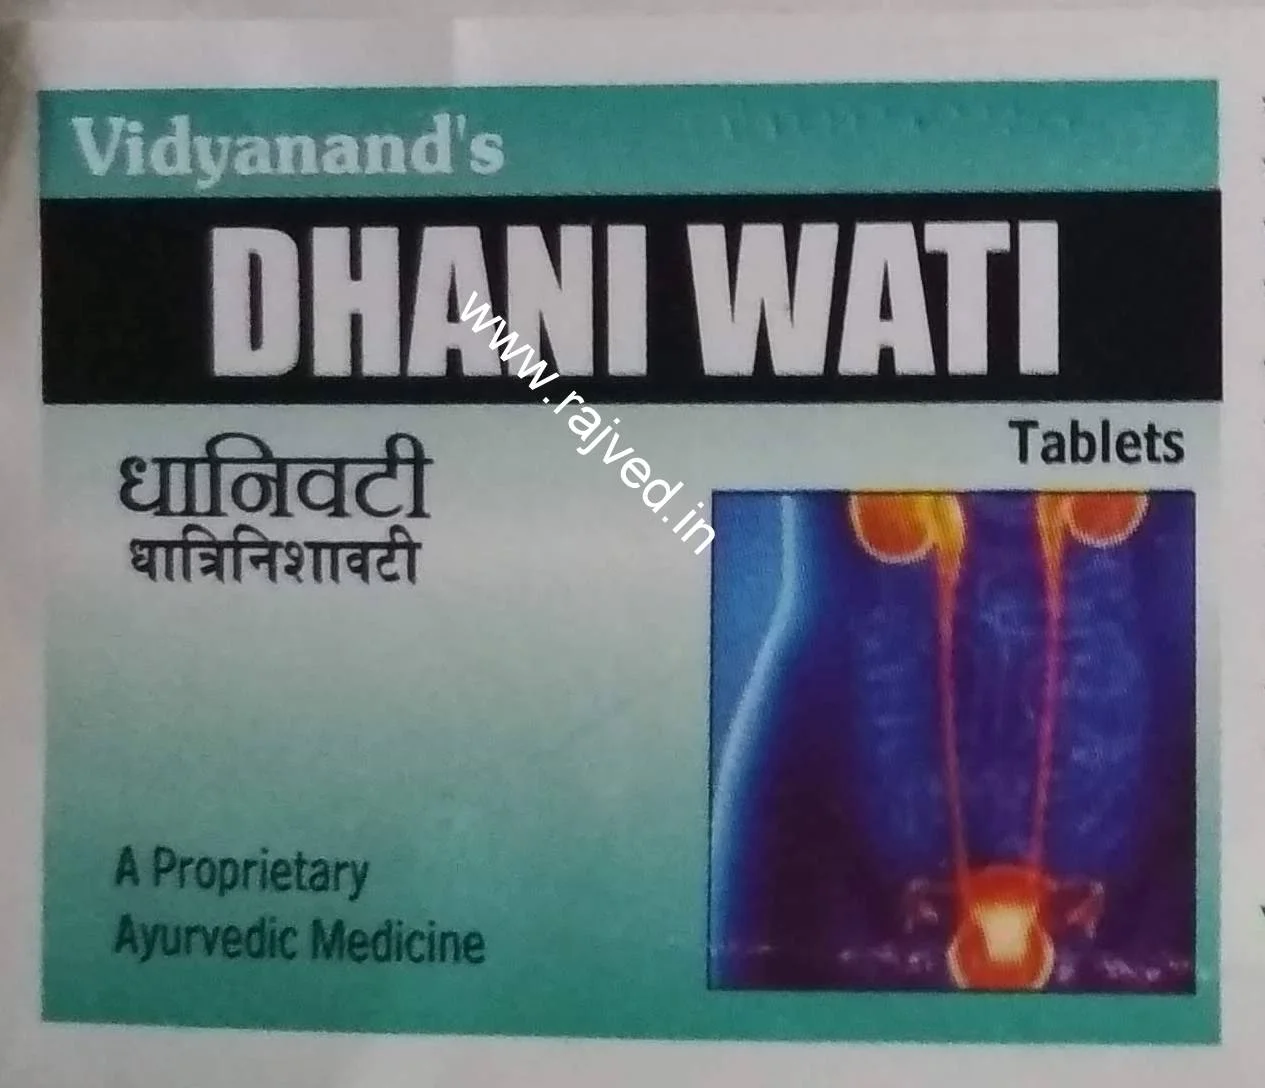 dhani wati 60tab Upto 15% Off Vidyanand Labs Pvt Ltd